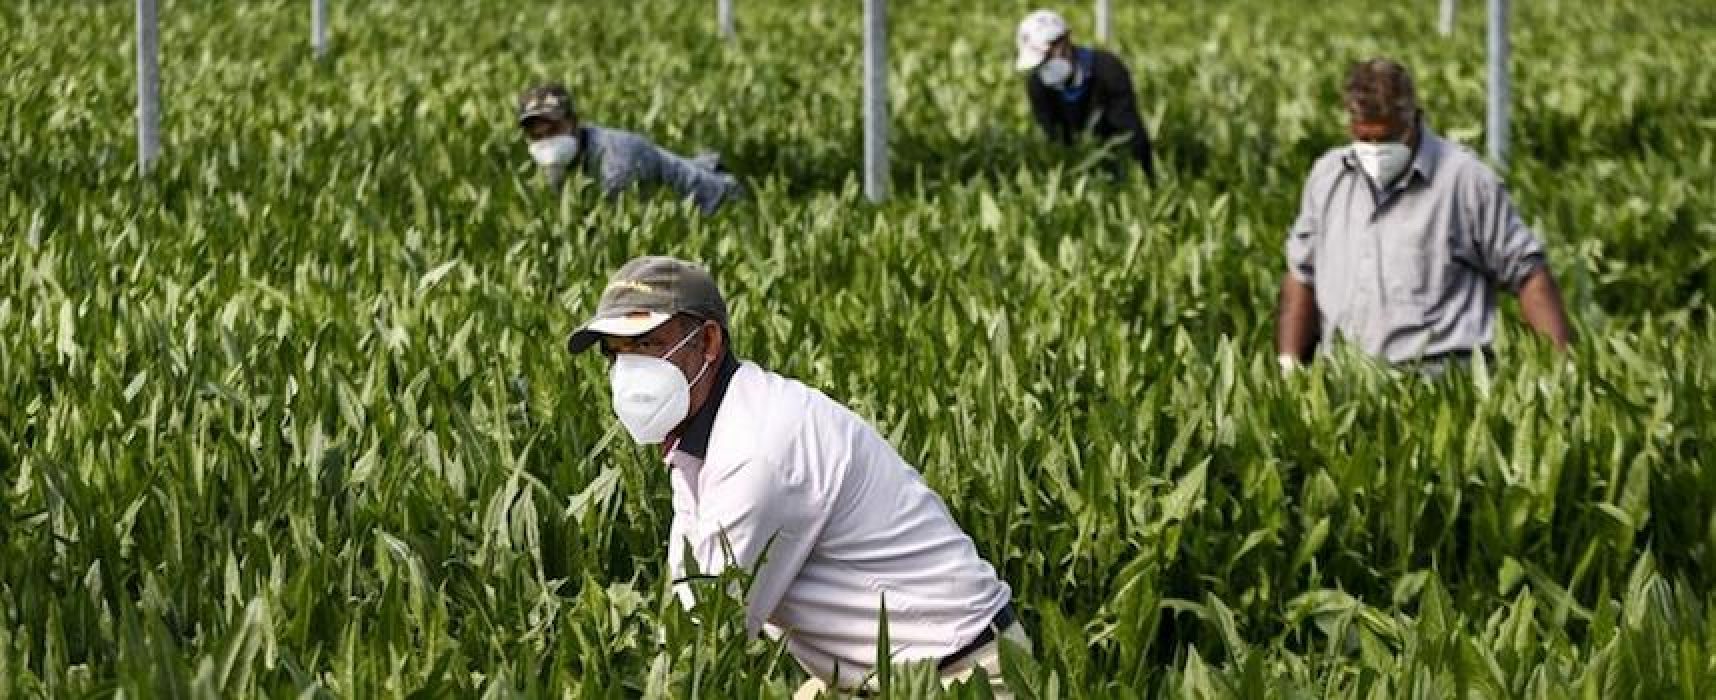 Cimala Ebat, al via distribuzione 30.000 mascherine gratuite a lavoratori agricoli